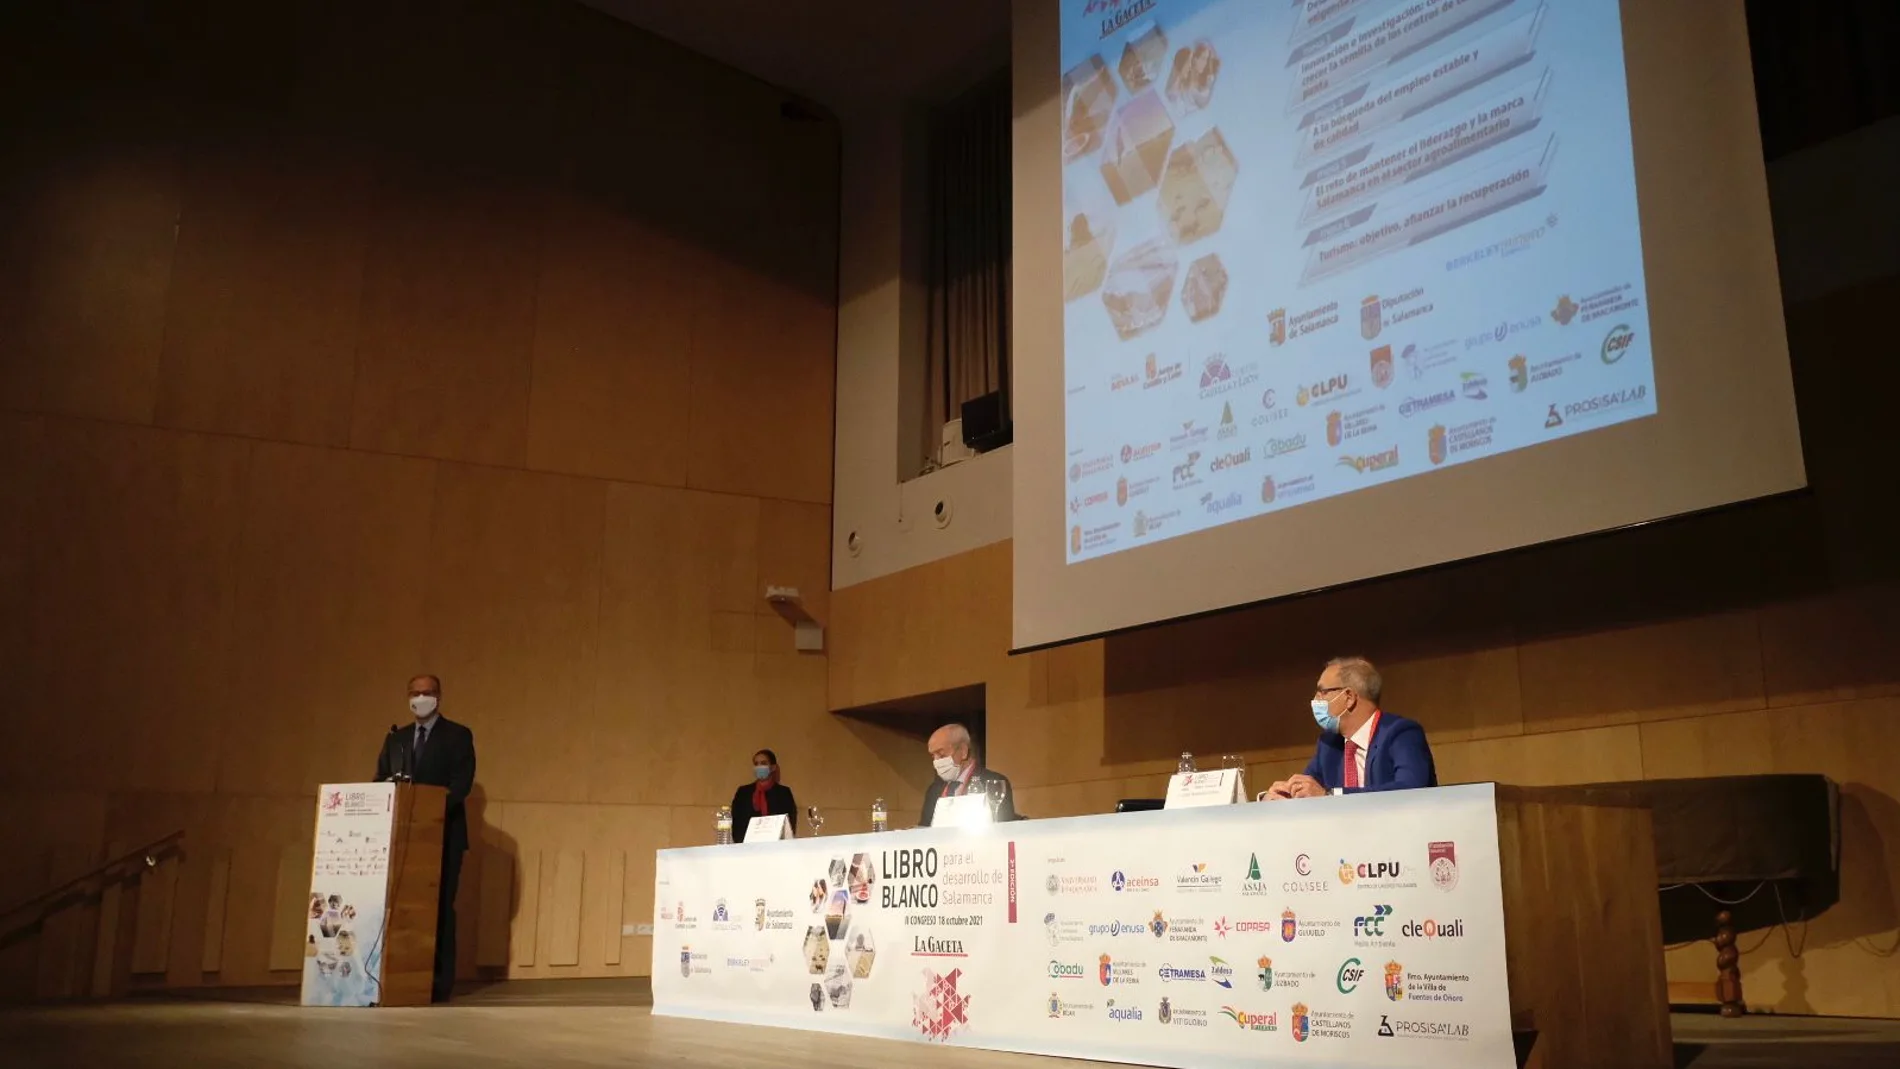 El presidente de las Cortes de Castilla y León, Luis Fuentes, inaugura el II Congreso "LibroBlanco para el Desarrollo de Salamanca"